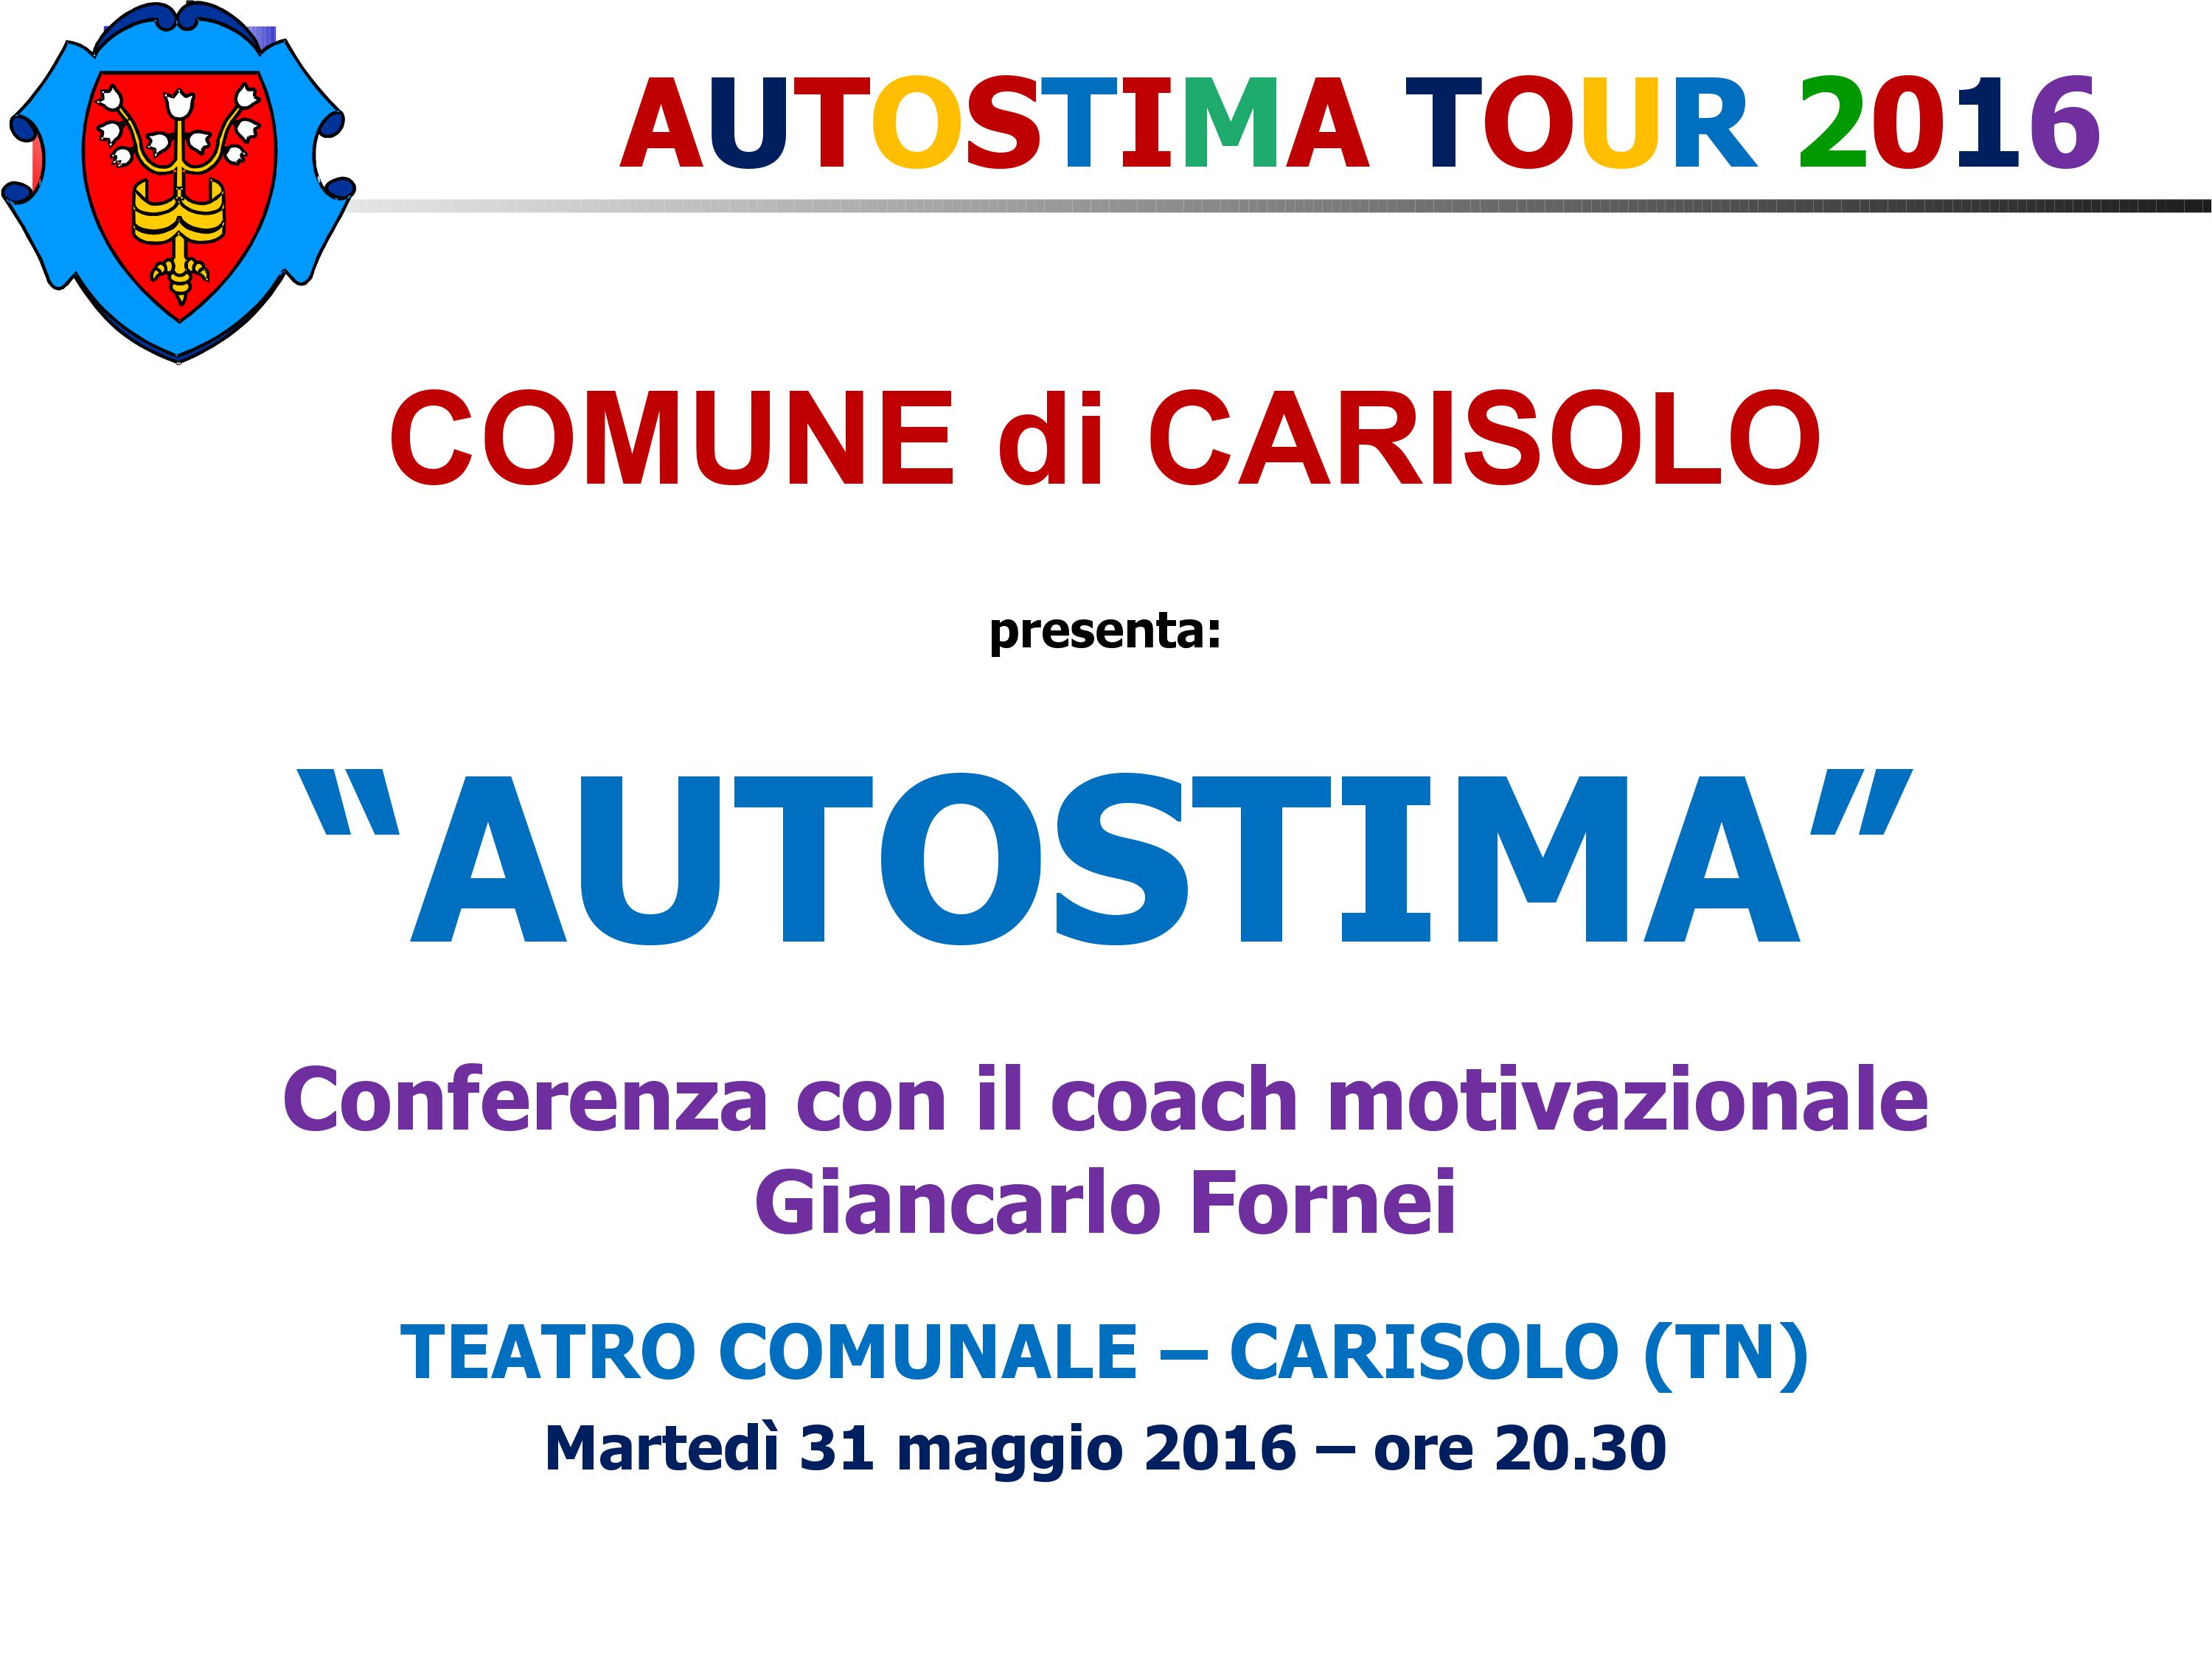 Carisolo, Trento - 31 maggio 2016 - conferenza del coach motivazionale Giancarlo Fornei